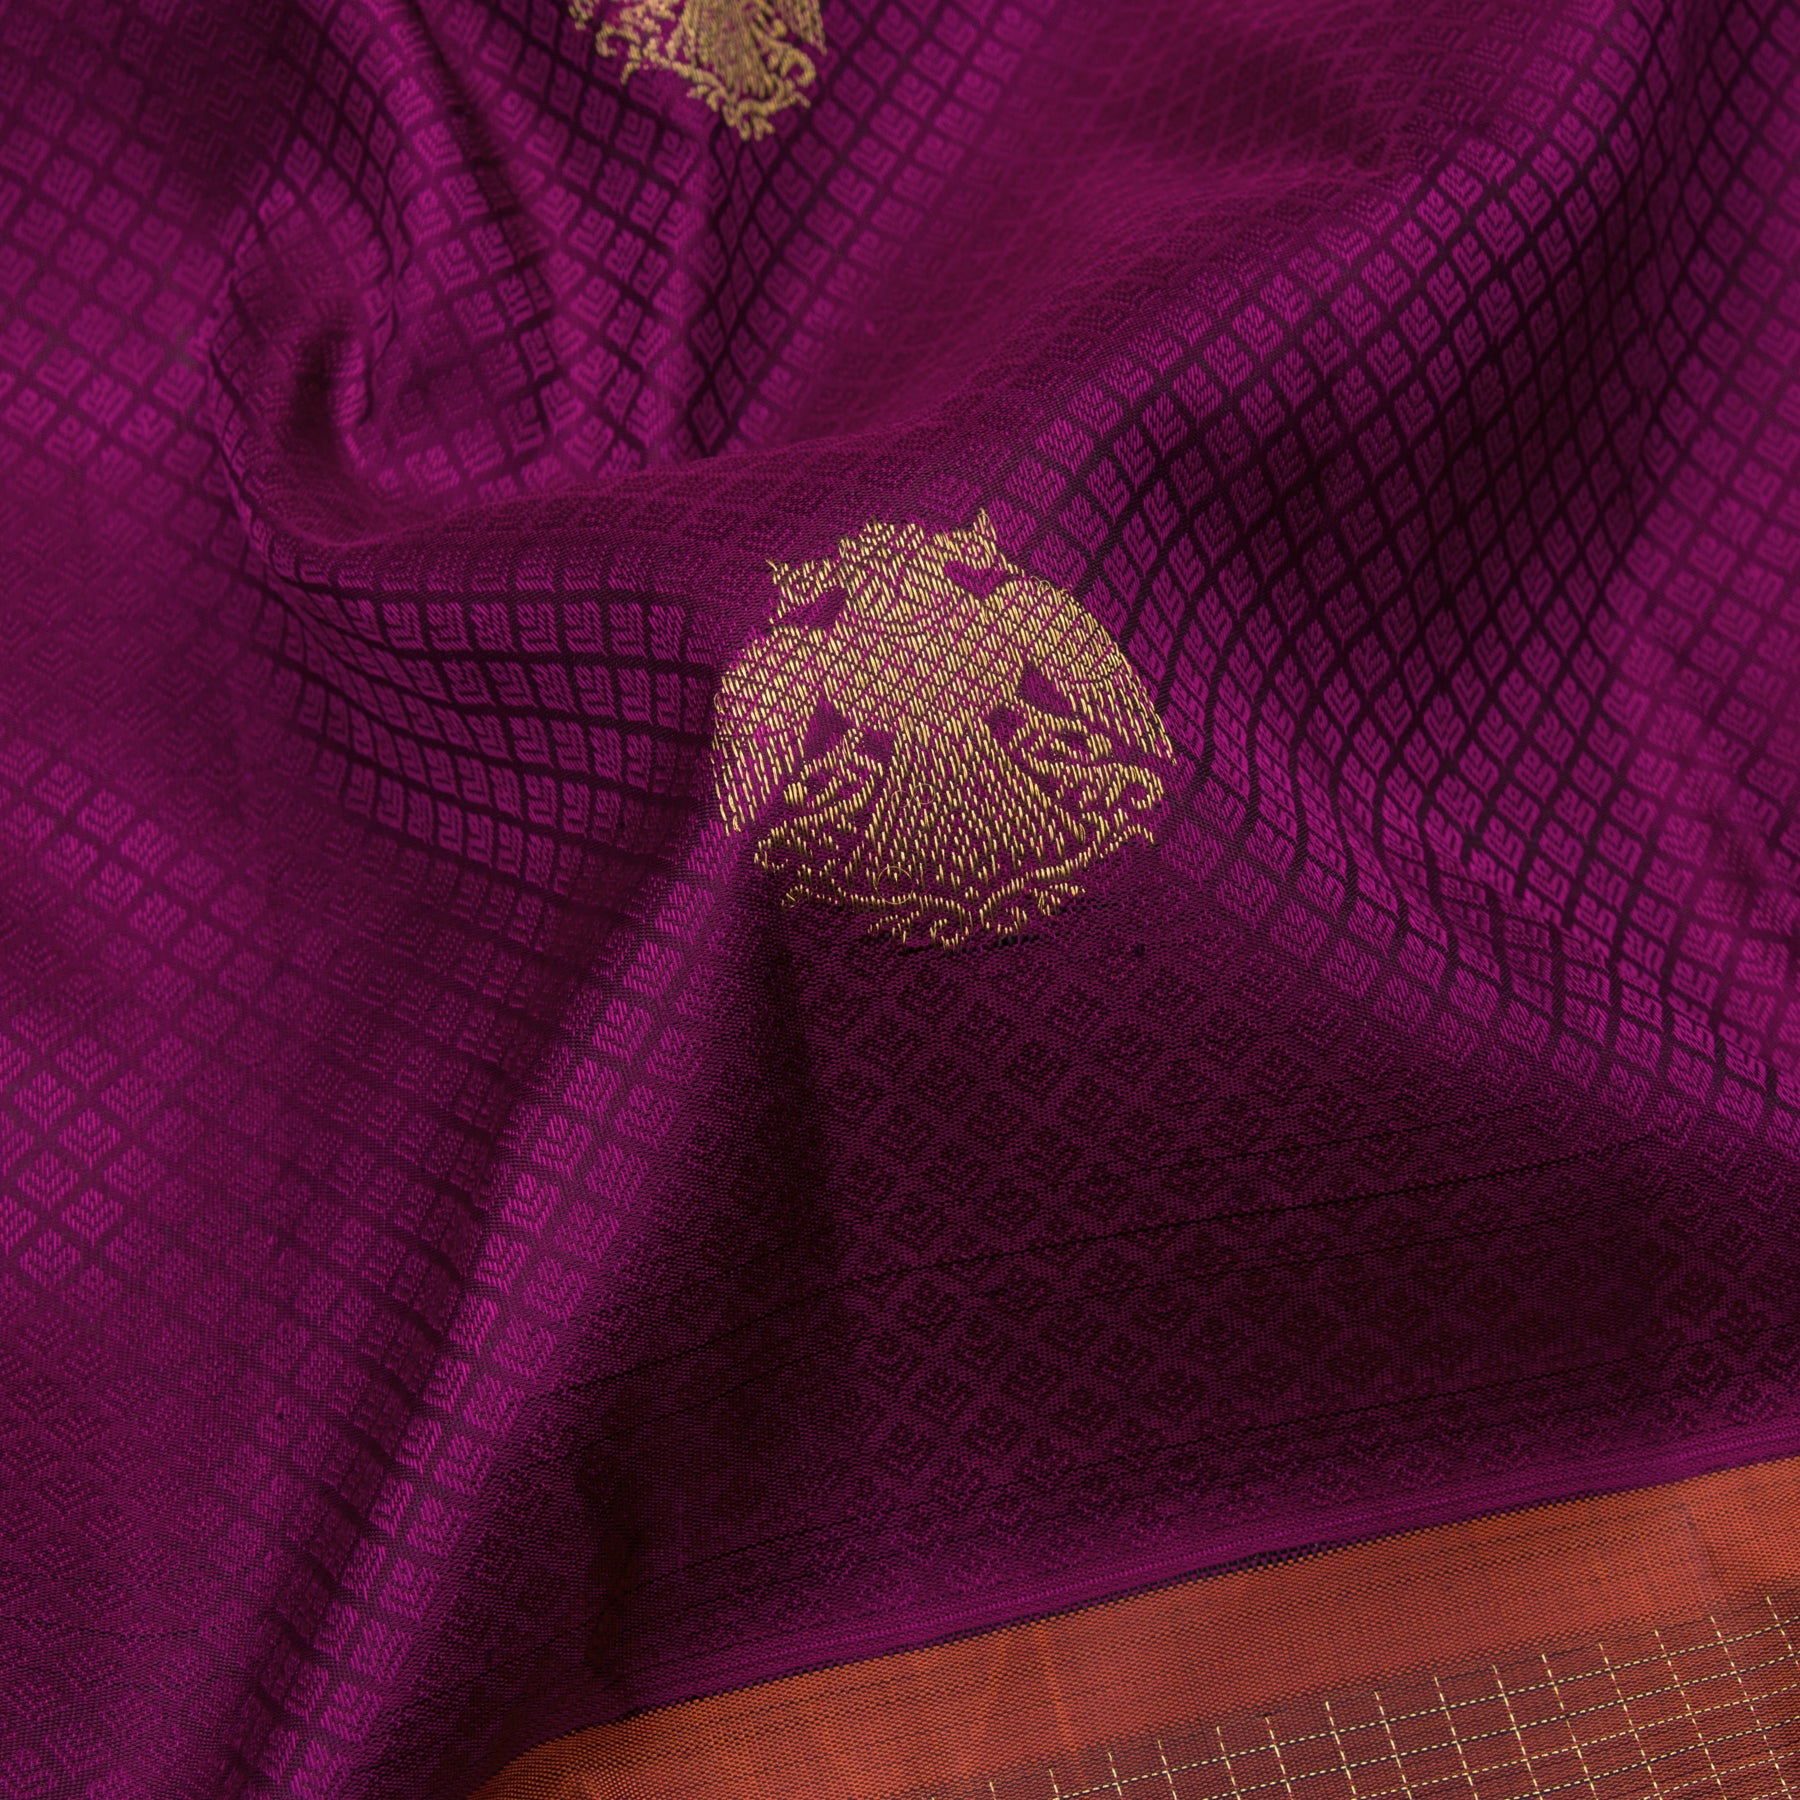 Kanakavalli Kanjivaram Silk Sari 22-599-HS001-01303 - Fabric View